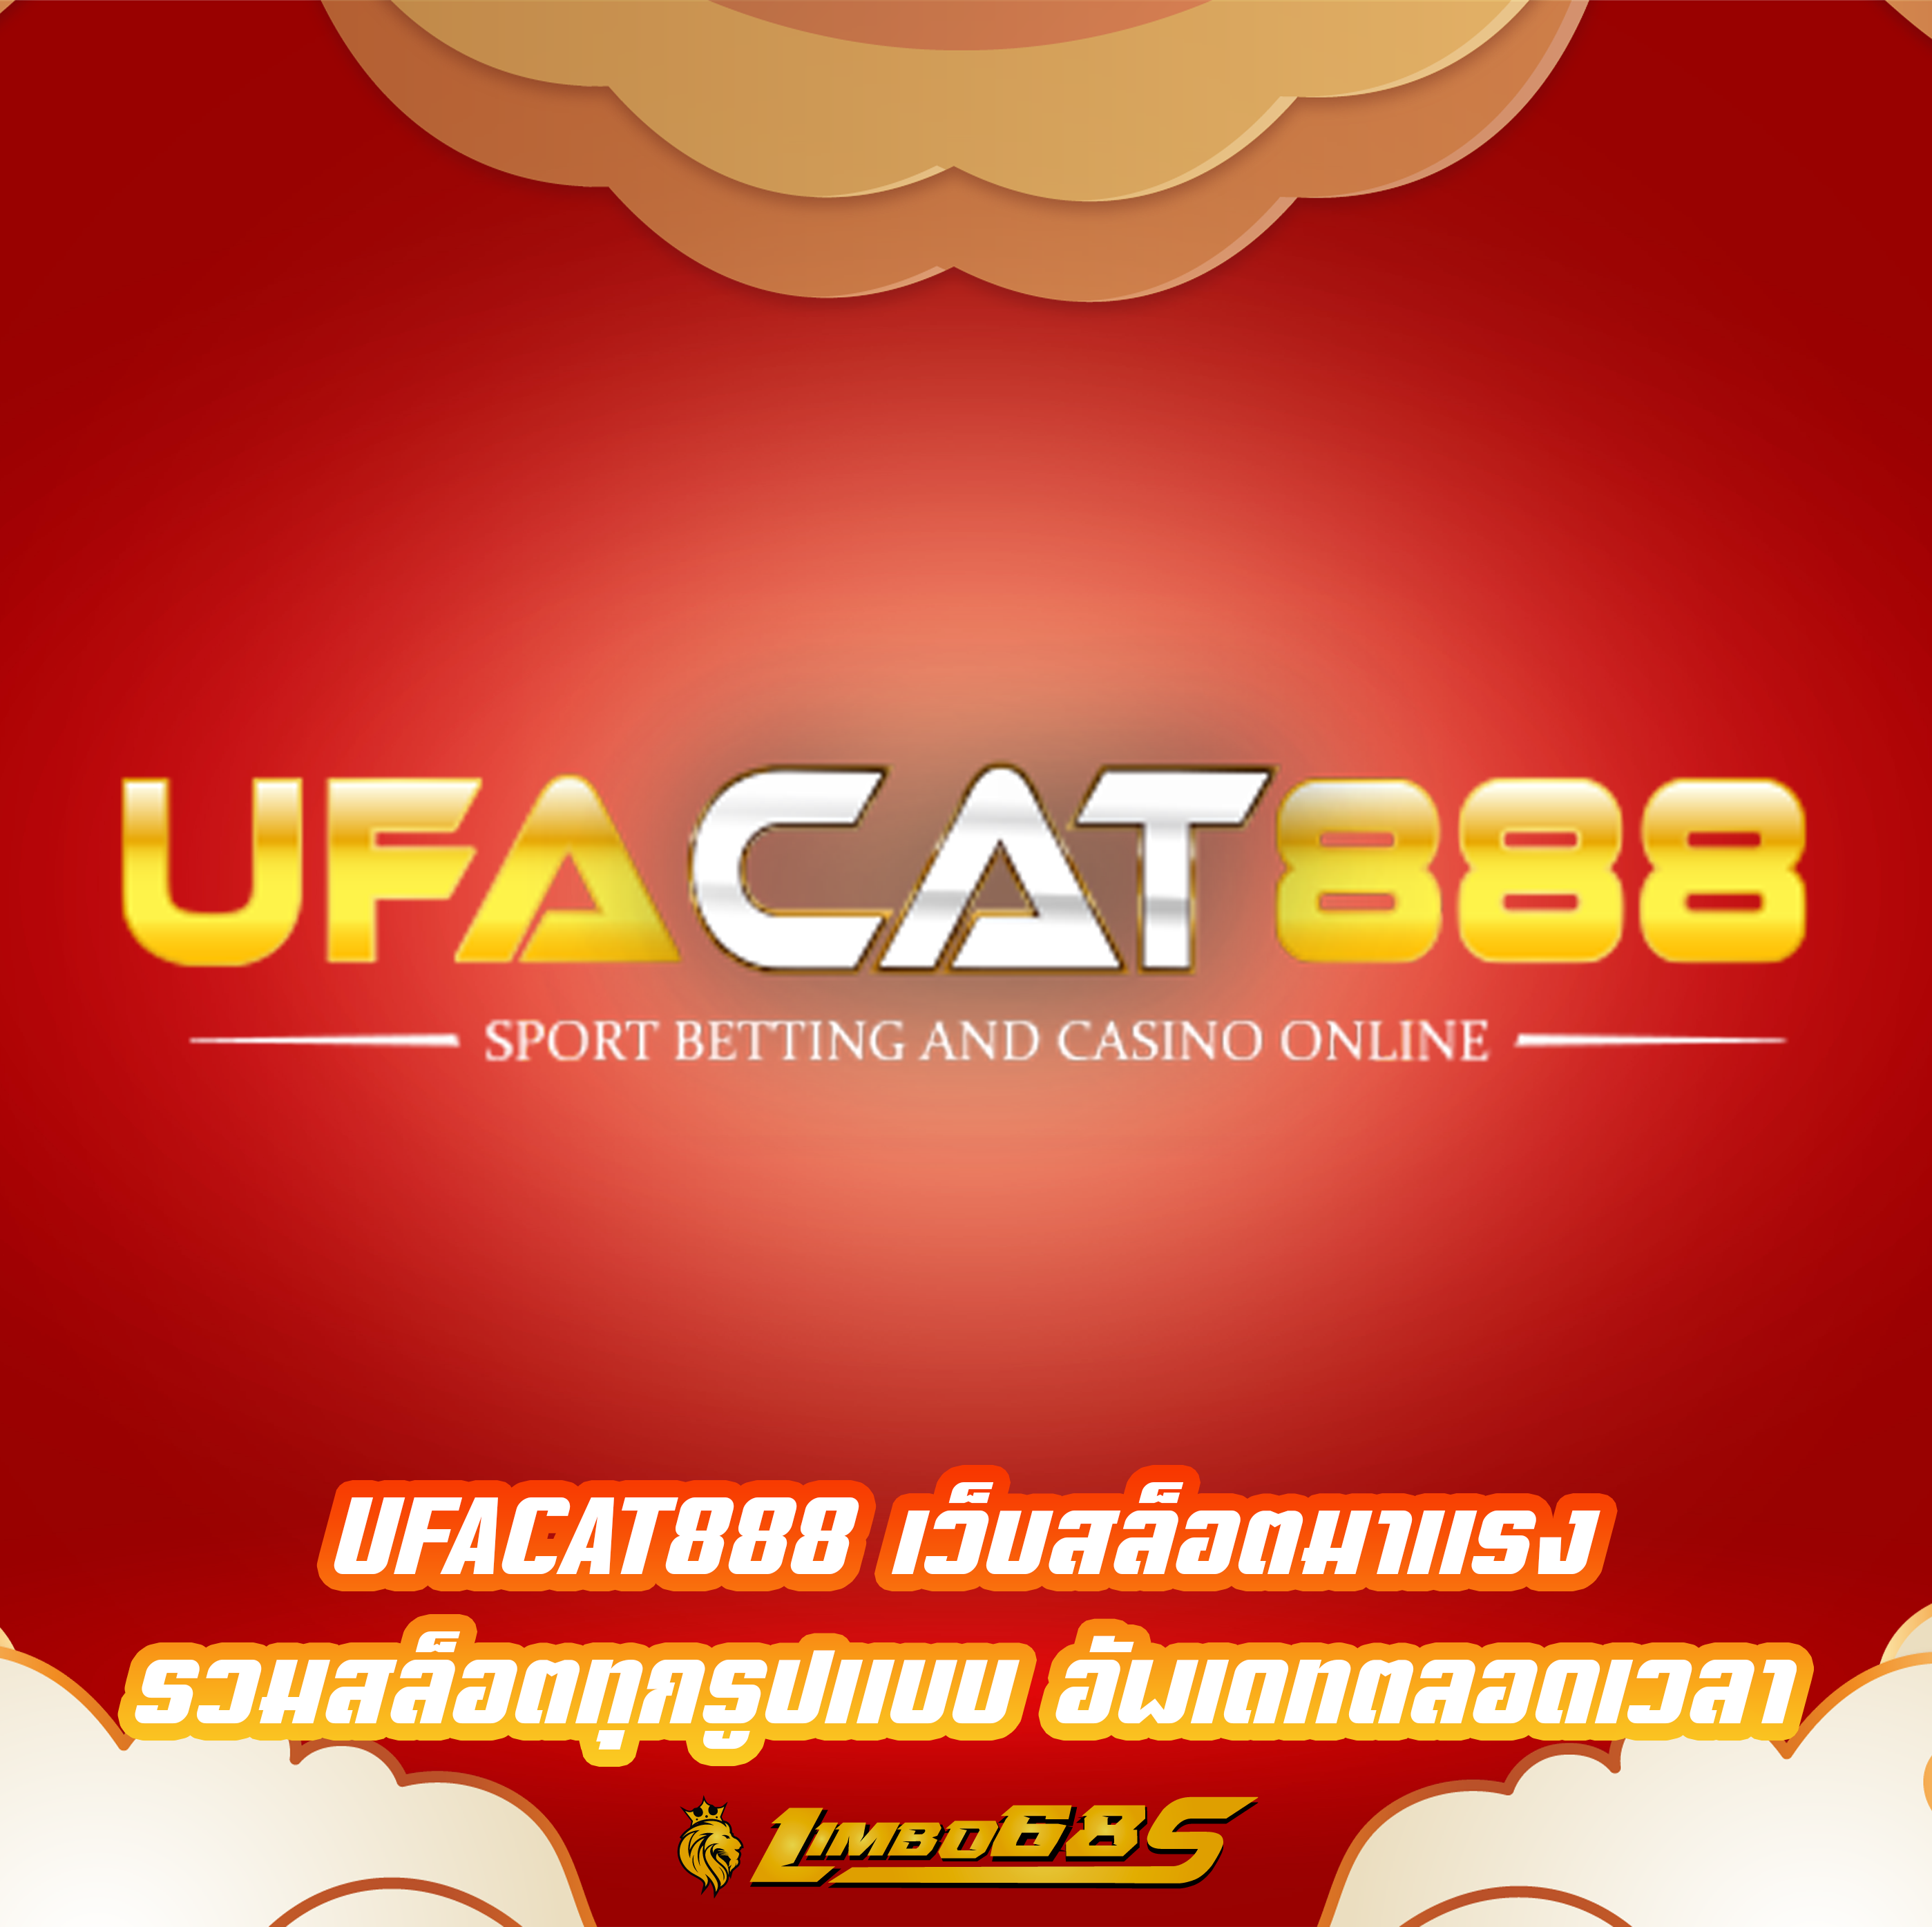 UFACAT888 เว็บสล็อตมาแรง รวมสล็อตทุกรูปแบบ อัพเดทตลอดเวลา